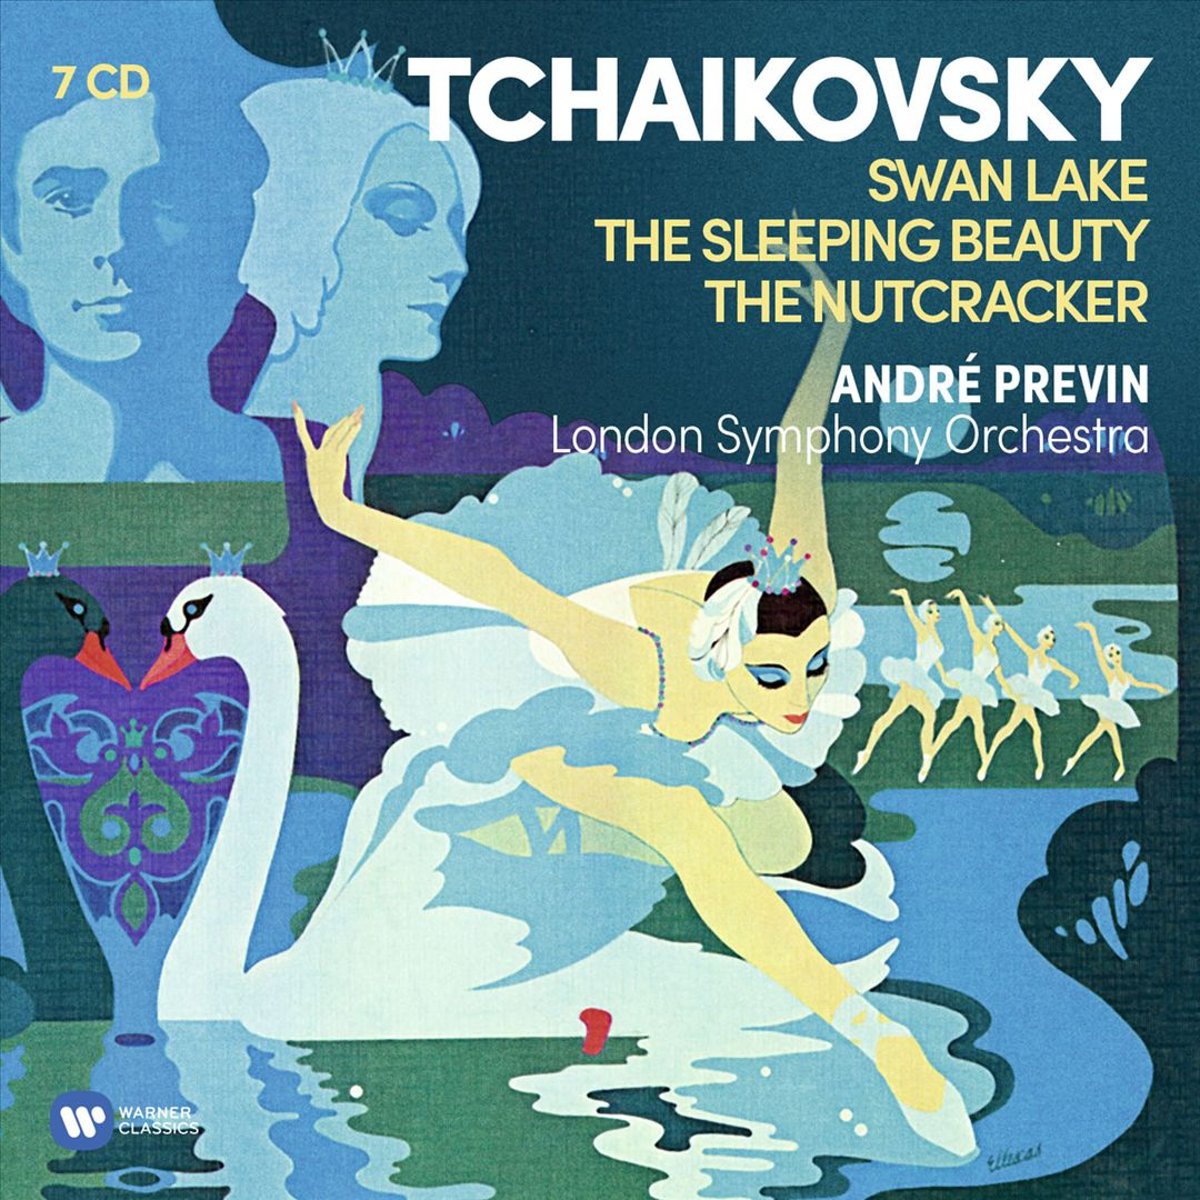 Tchaikovsky Ballets Swan Lake Nutcracker Sleeping Beauty Andre Previn Pyotr Ilyich